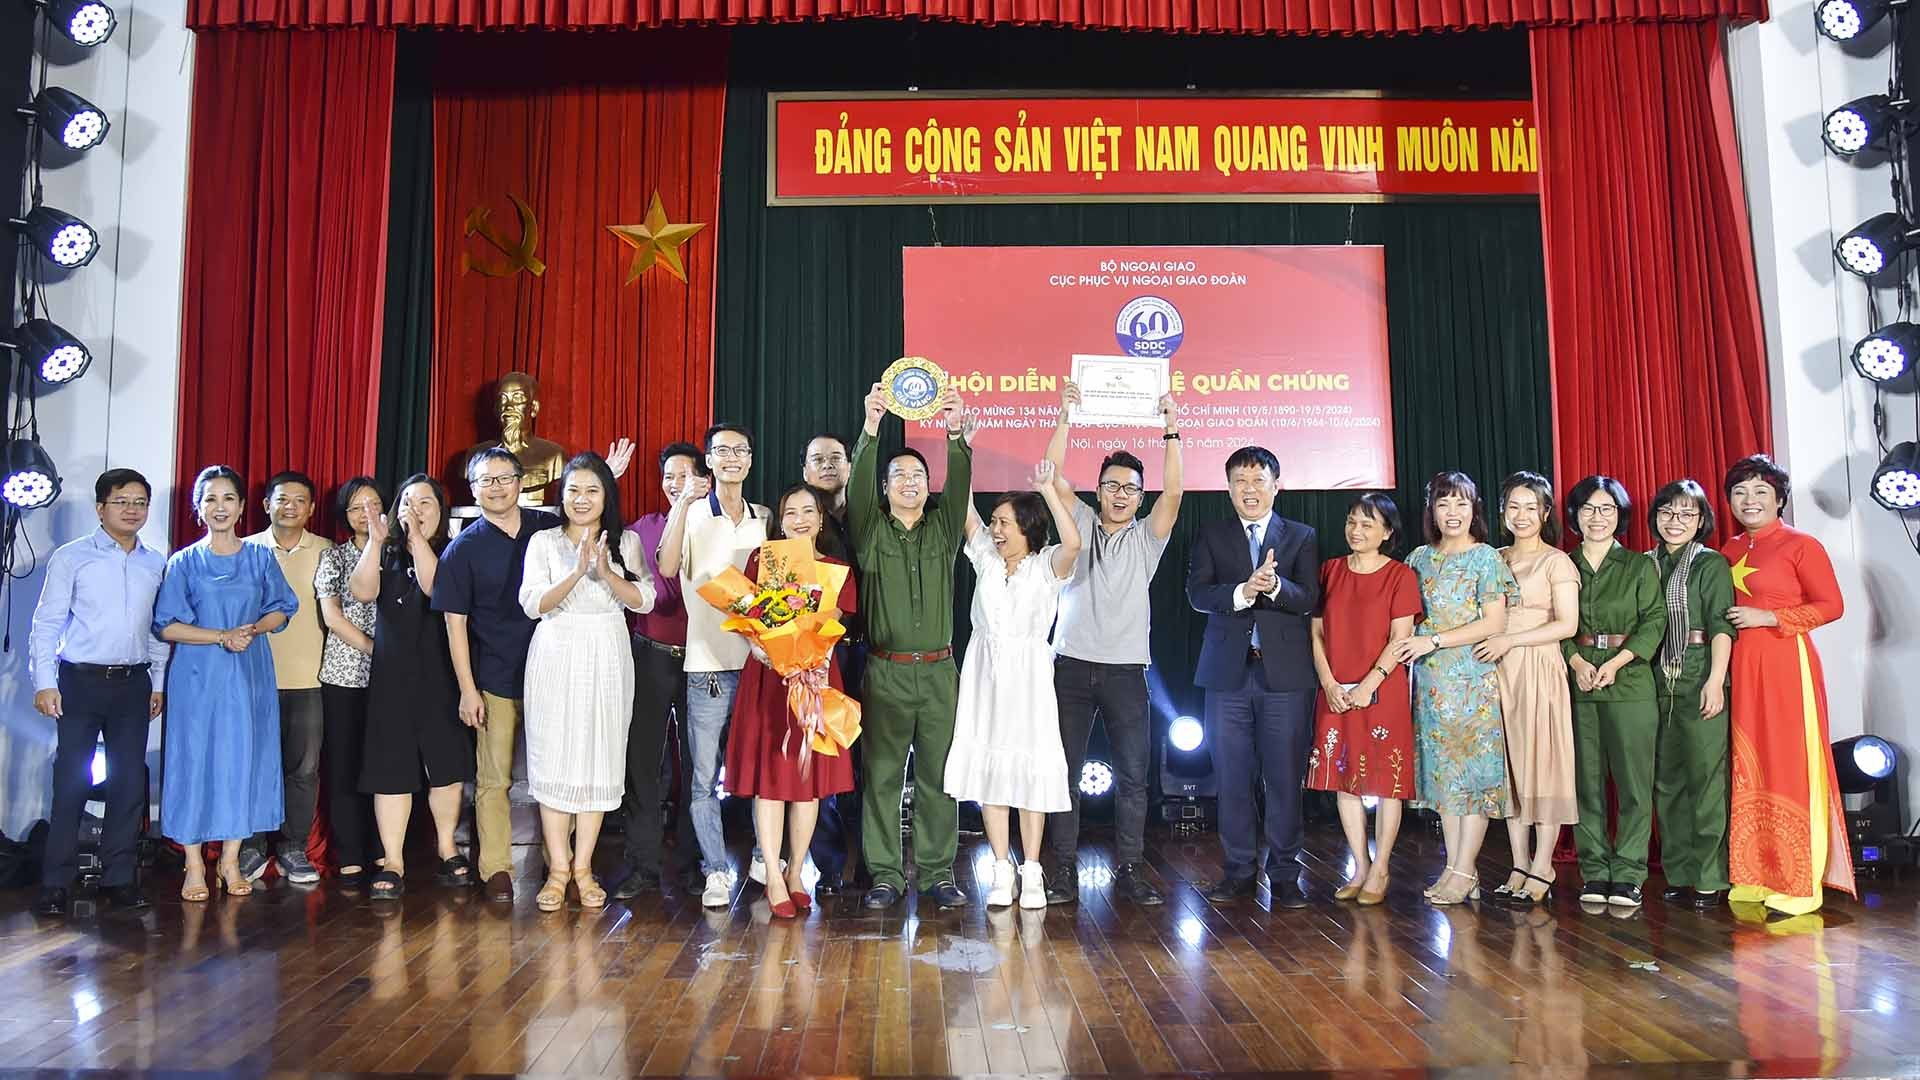 Cục Phục vụ Ngoại giao đoàn tổ chức Hội diễn văn nghệ quần chúng Kỷ niệm 134 năm ngày sinh Chủ tịch  Hồ Chí Minh (19/5/1890-19/5/2024) và chào mừng Kỷ niệm 60 năm Ngày thành lập đơn vị. (Ảnh: Anh Sơn)